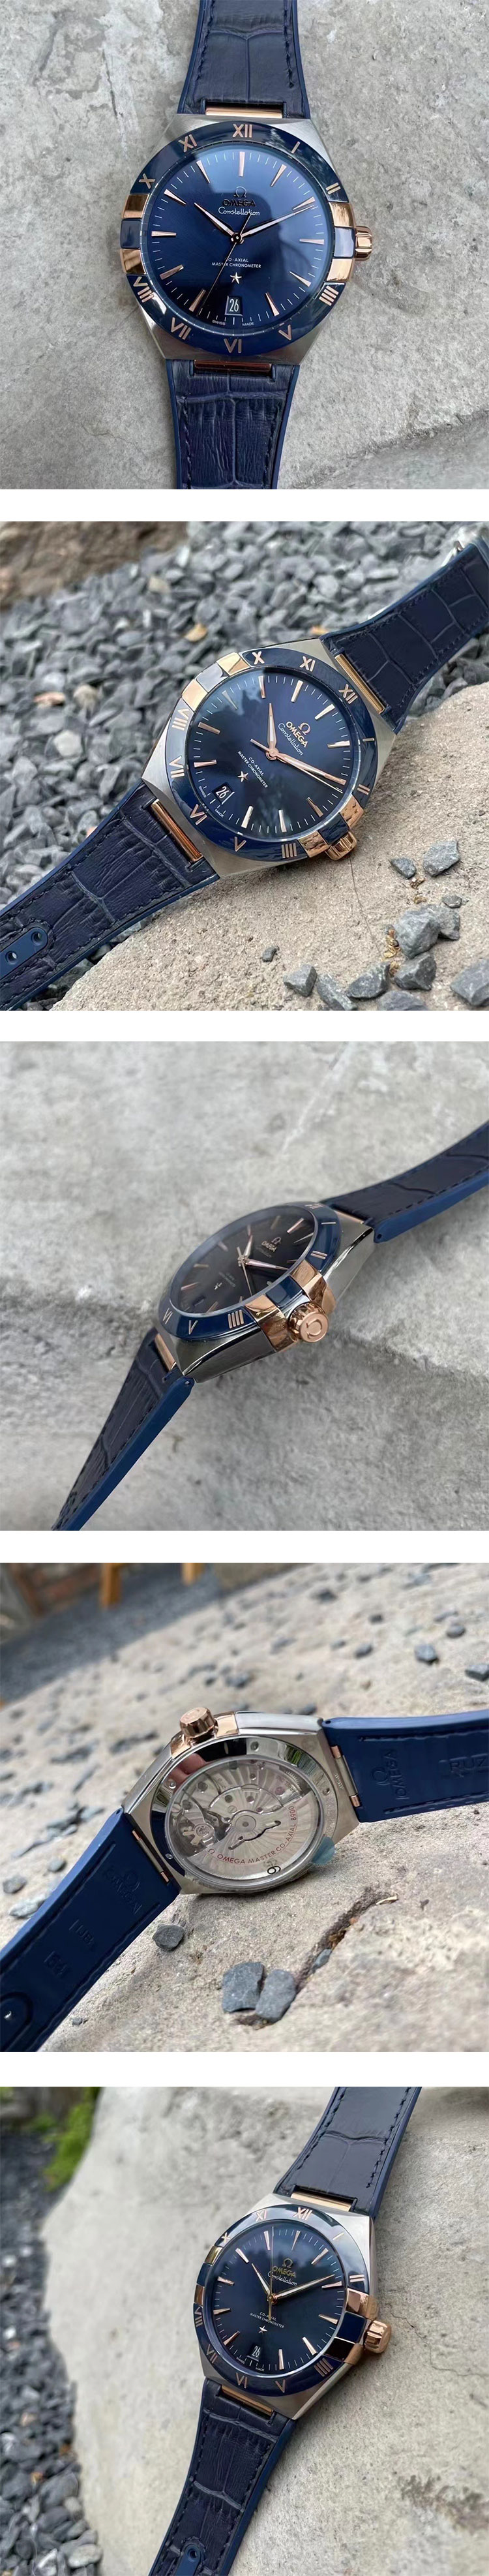 オメガ腕時計コピー コンステレーション コーアクシャル マスタークロノメーター 131.23.41.21.03.001 SBF製 最安値